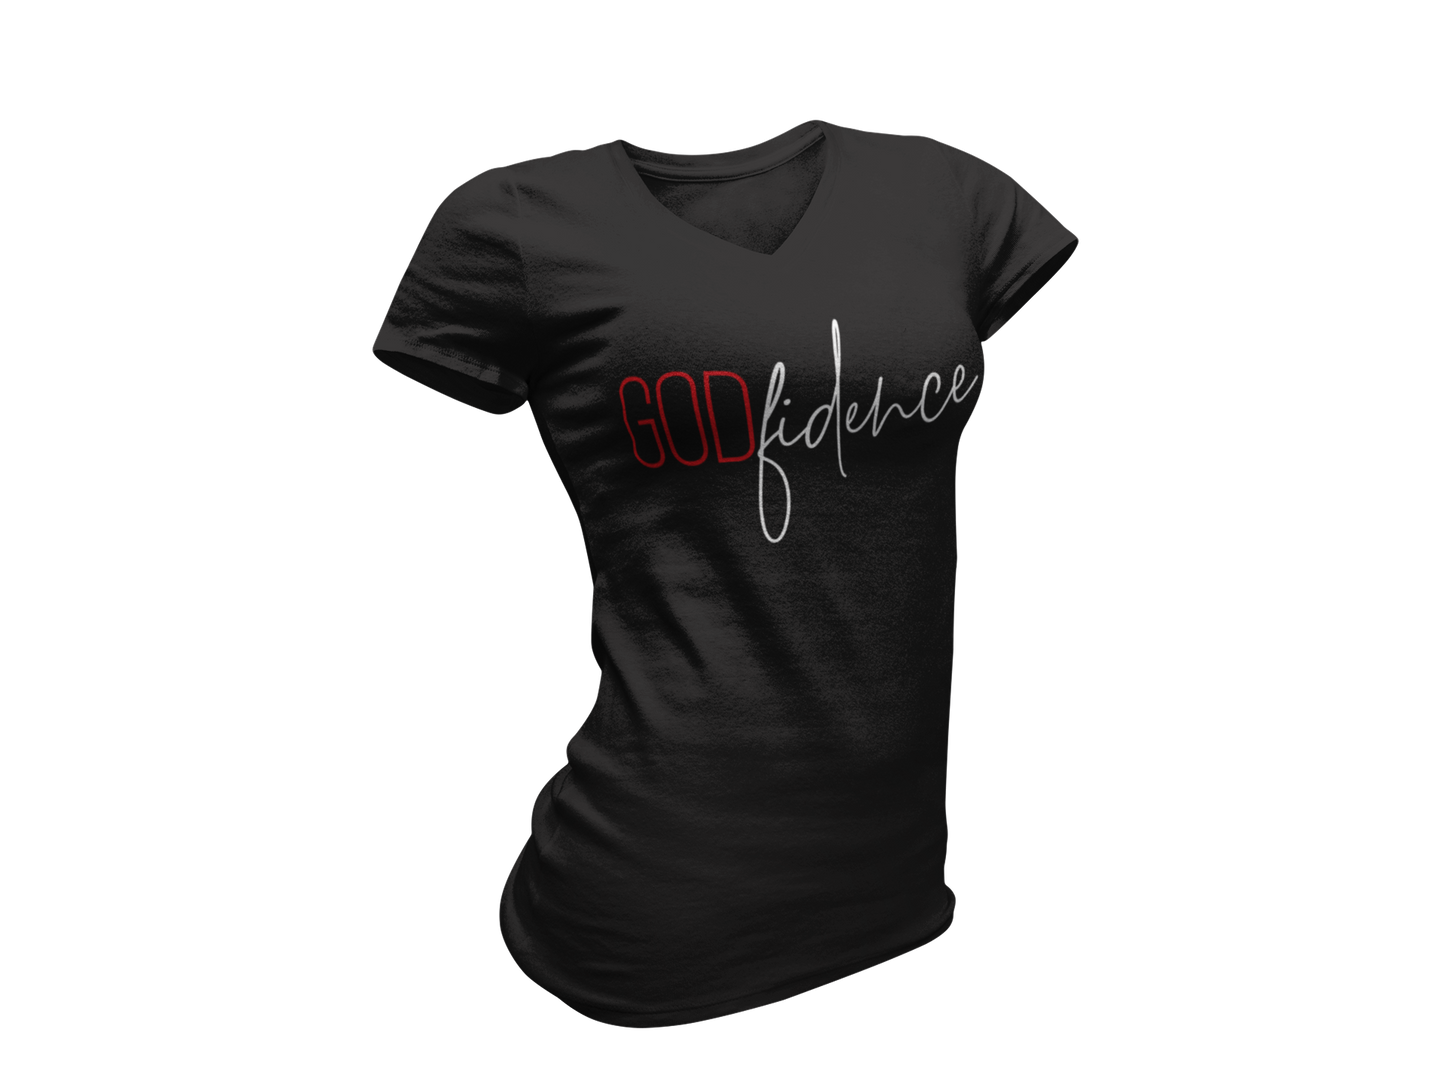 GodFidence Women's T-Shirt